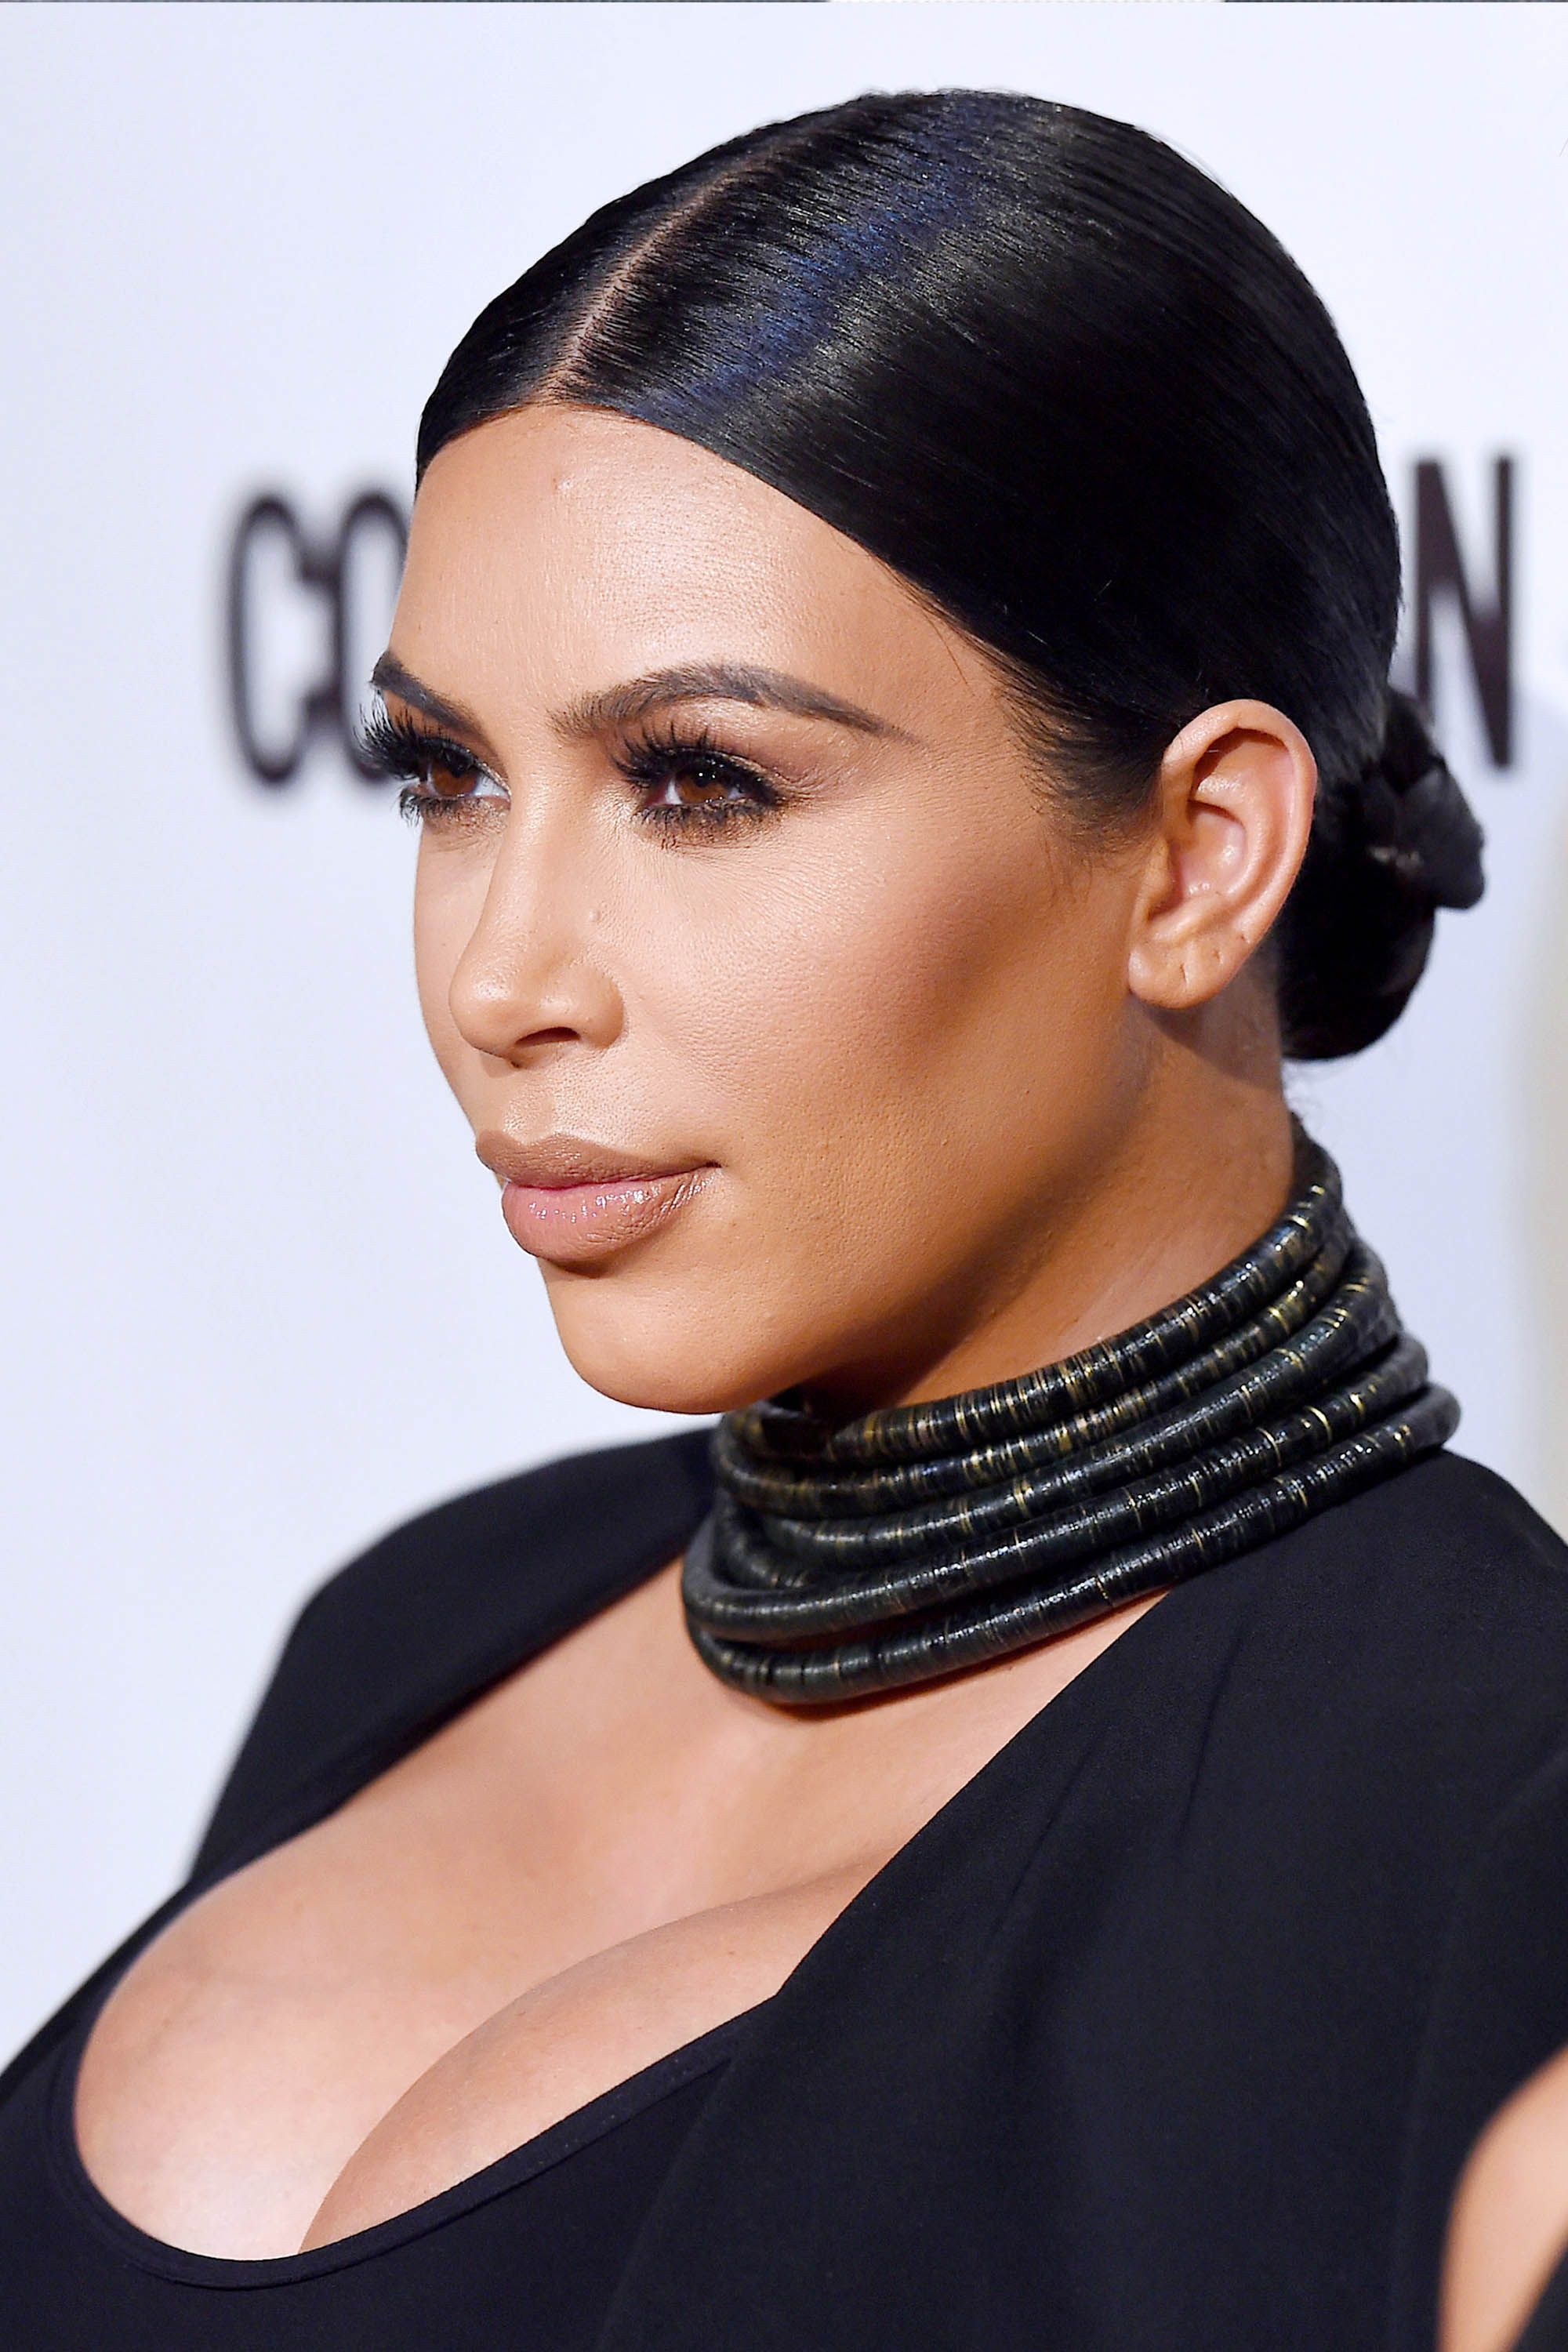 50 Best Kim Kardashian Hair Looks - Kim Kardashian's Evolving Hairstyles